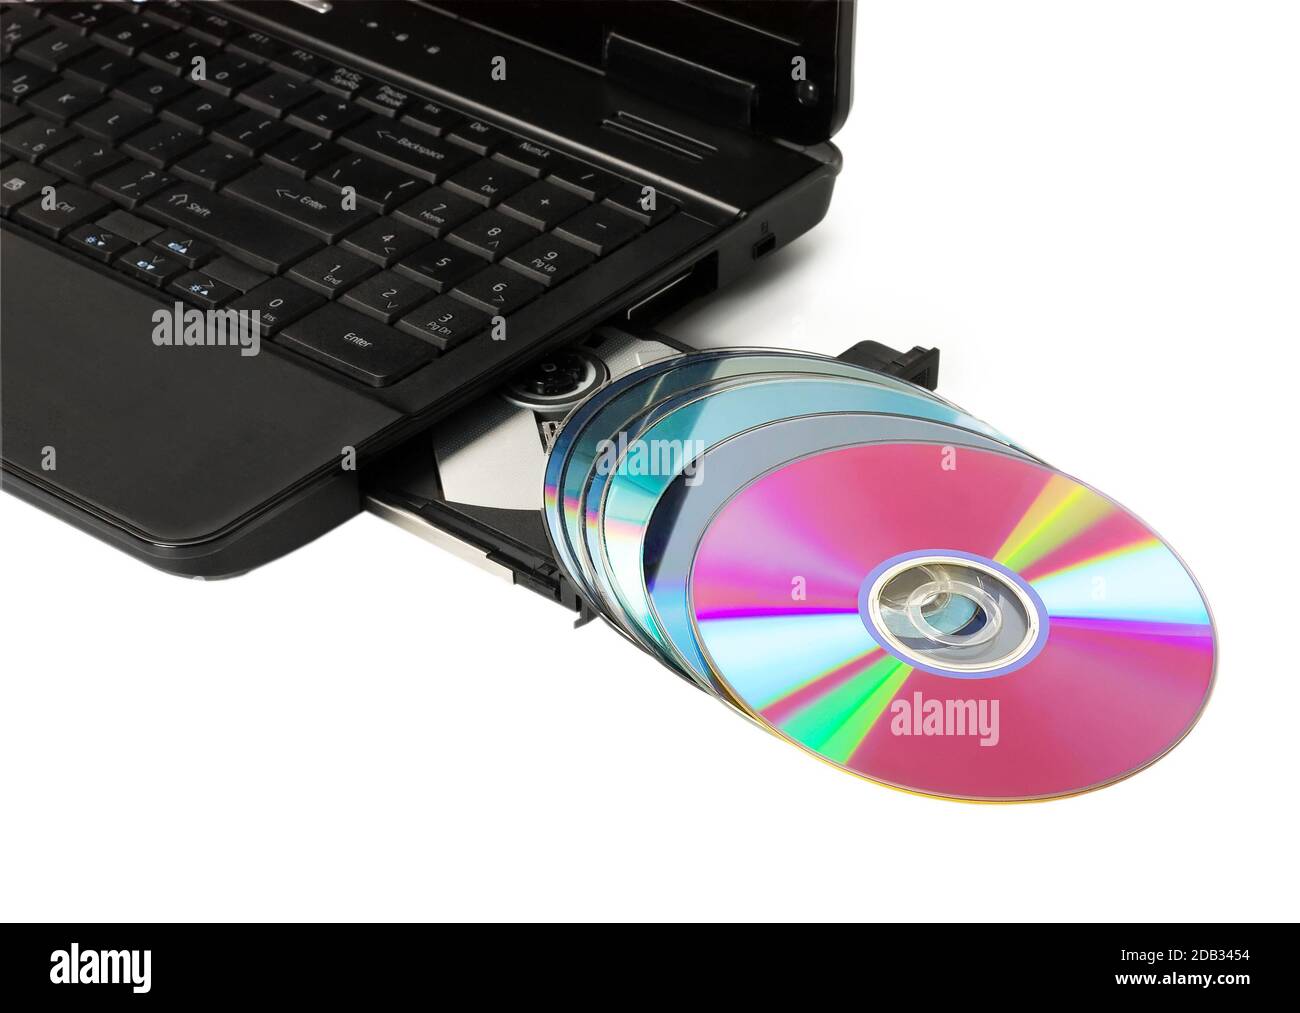 Ordenador portátil con unidad óptica de CD/DVD, unidad de cd-rom abierta  Fotografía de stock - Alamy